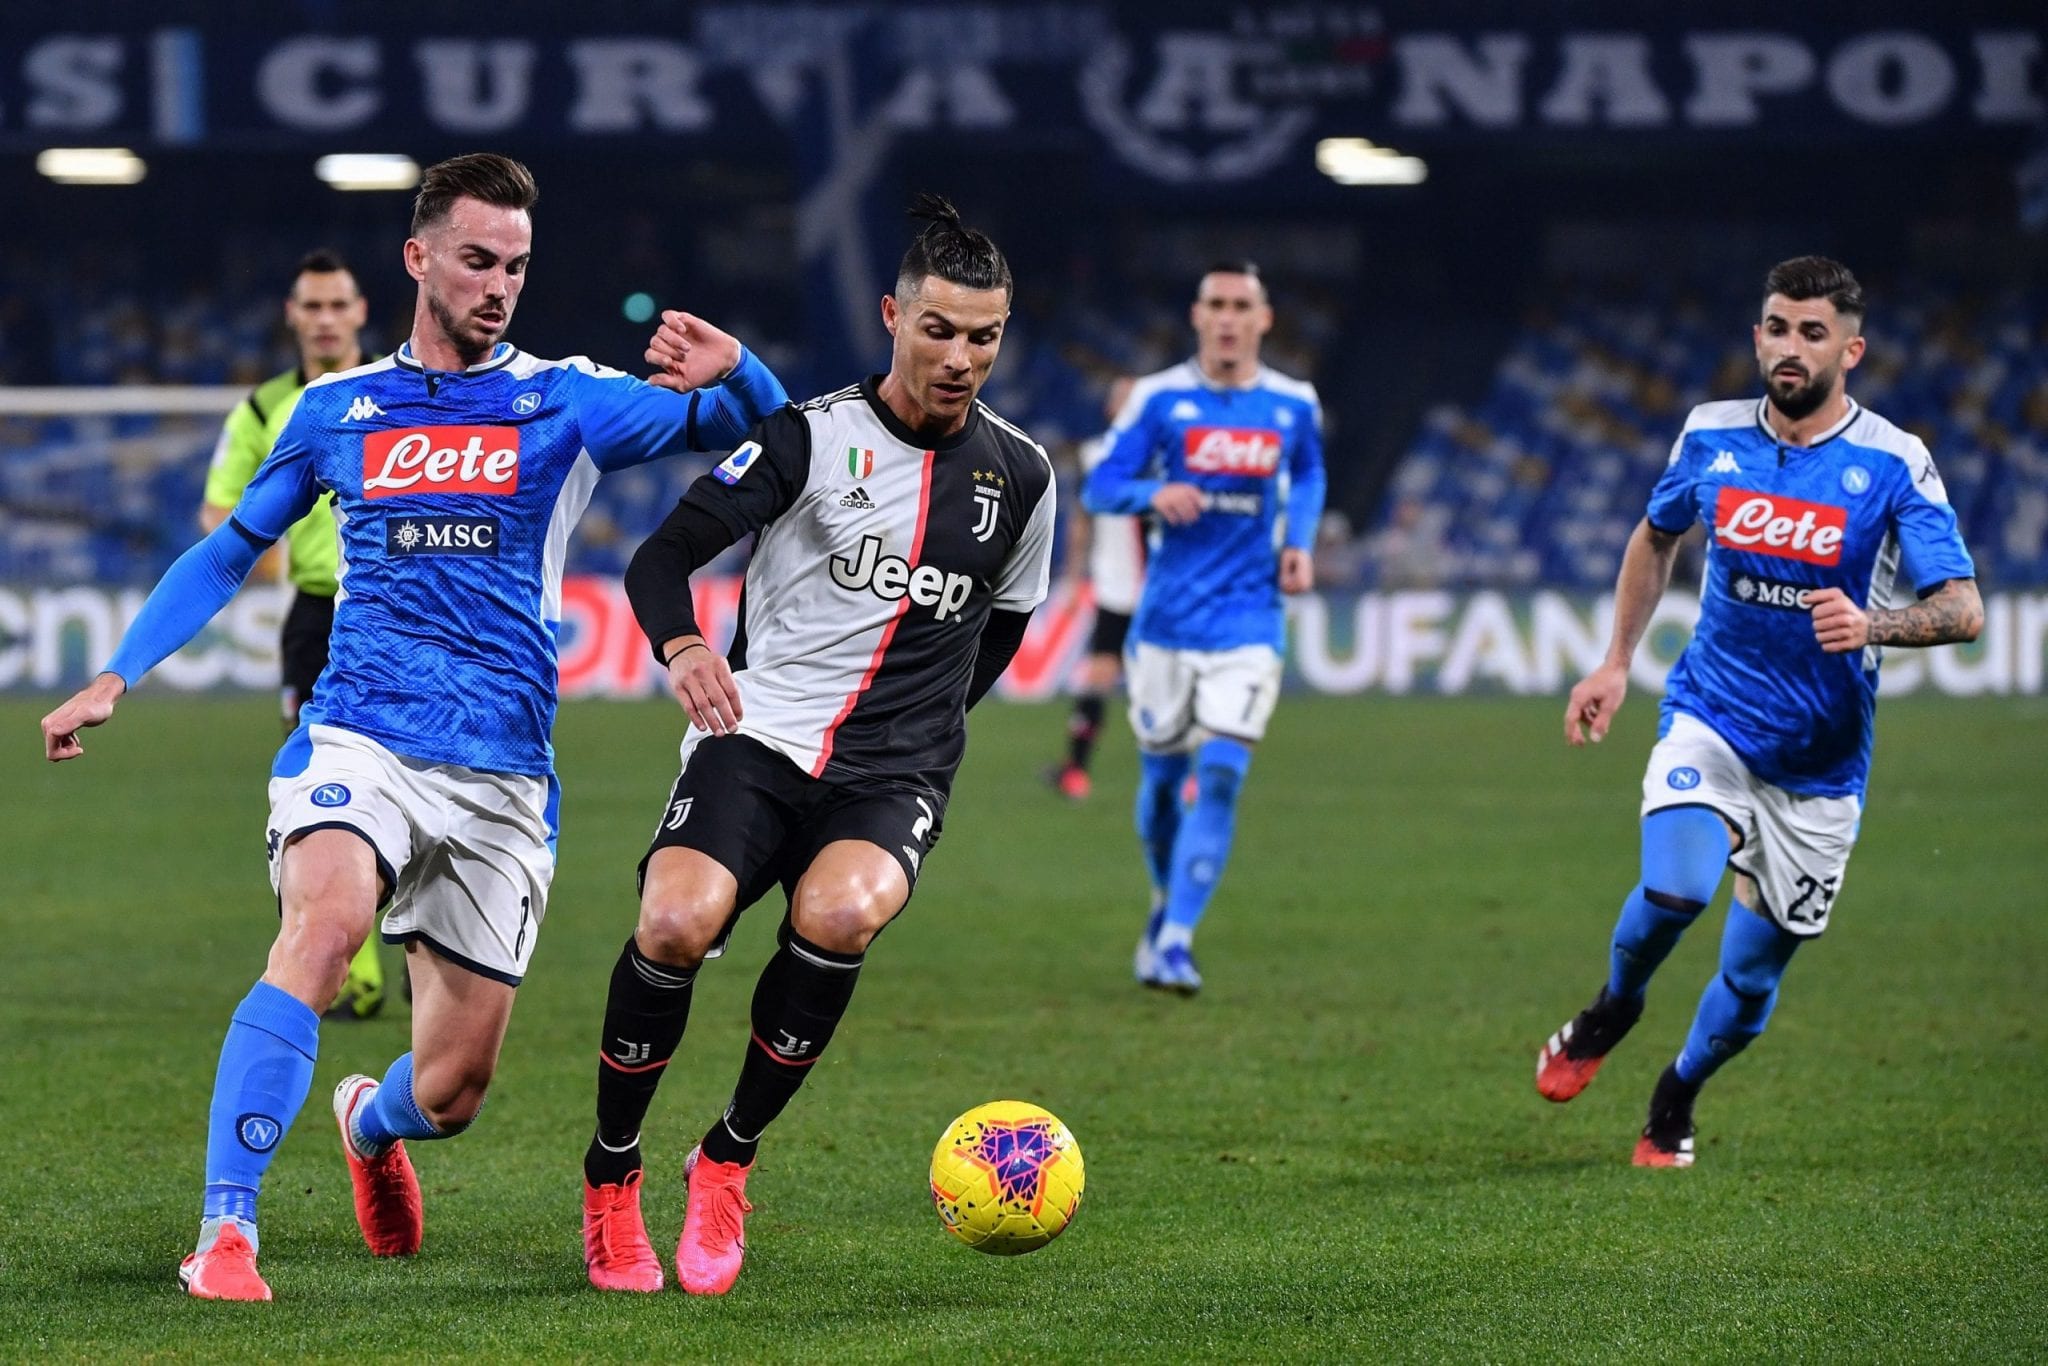 La finale di Coppa Italia, con Napoli vs Juventus